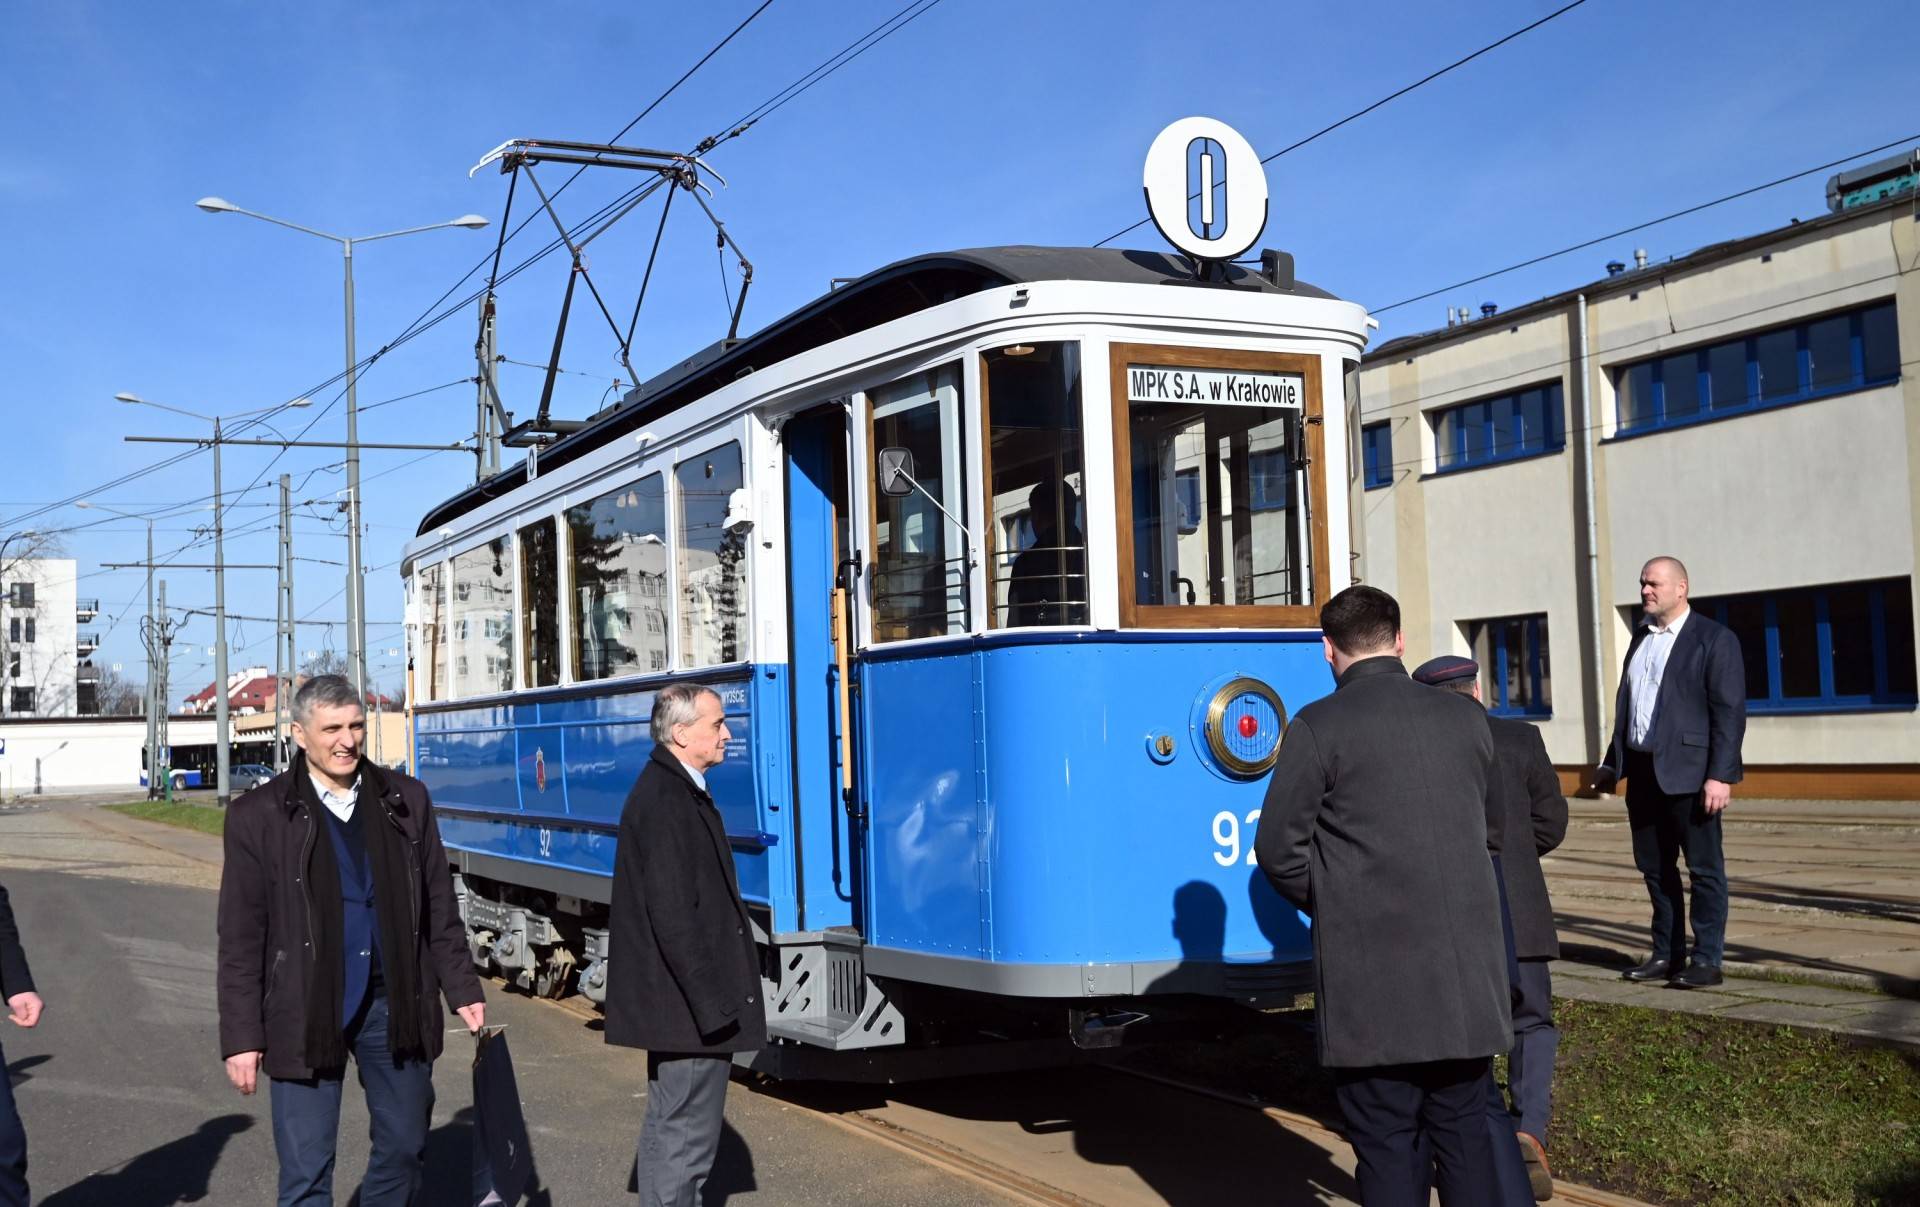 Te tramwaje trafiły do Krakowa w czasie wojny, służyły bardzo długo